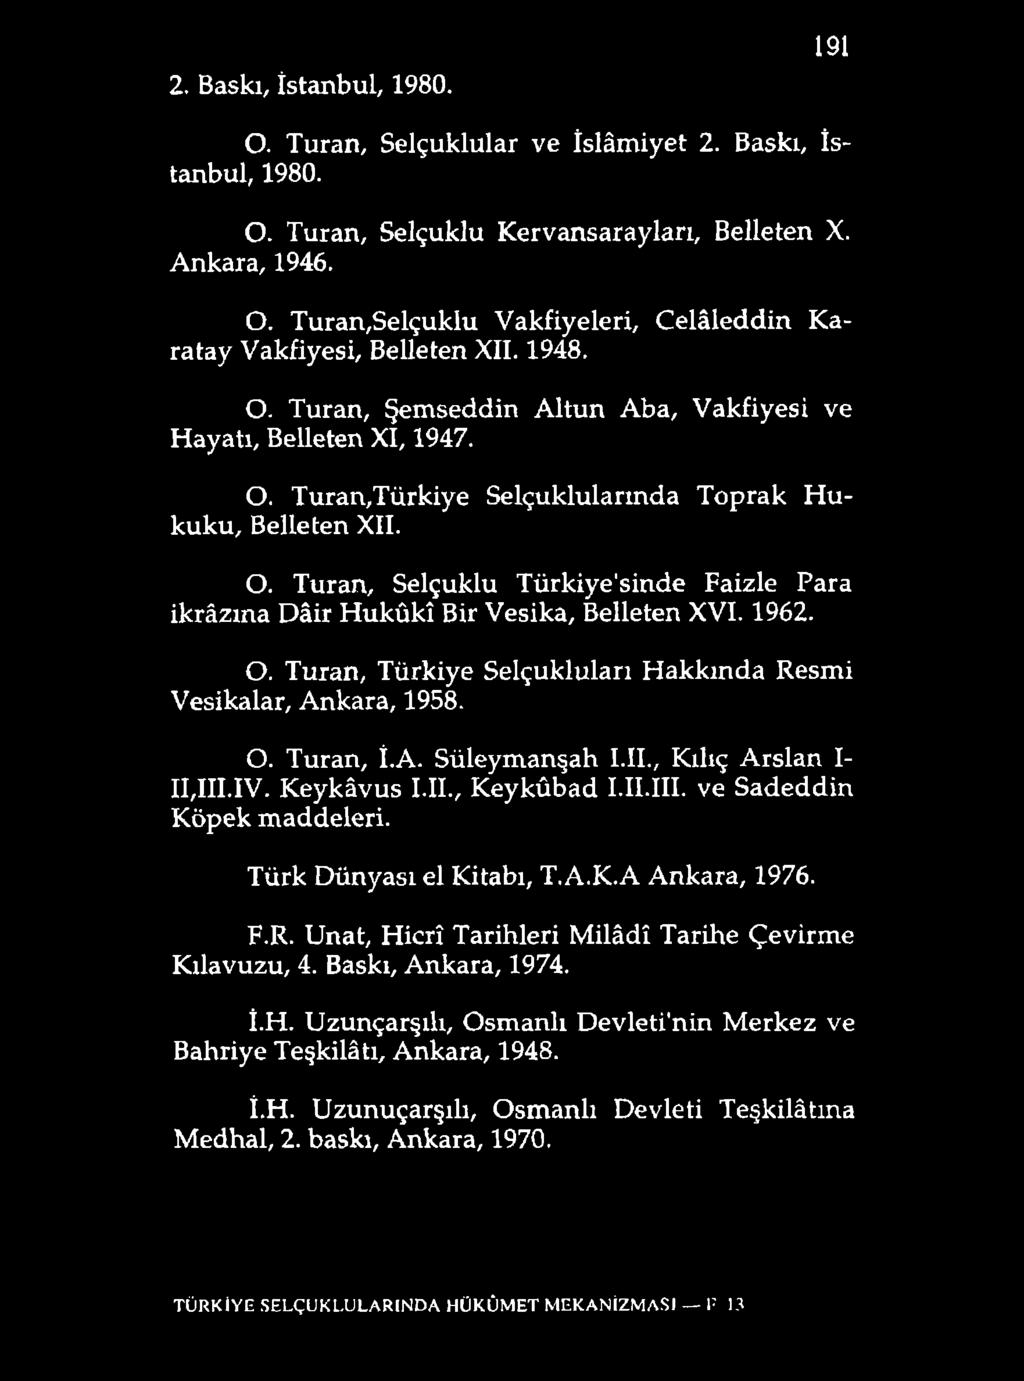 2. Baskı, İstanbul, 1980. 191 O. Turan, Selçuklular ve İslâmiyet 2. Baskı, İstanbul, 1980. O. Turan, Selçuklu Kervansarayları, Belleten X. Ankara, 1946. O. Turan,Selçuklu Vakfiyeleri, Celâleddin Karatay Vakfiyesi, Belleten XII.